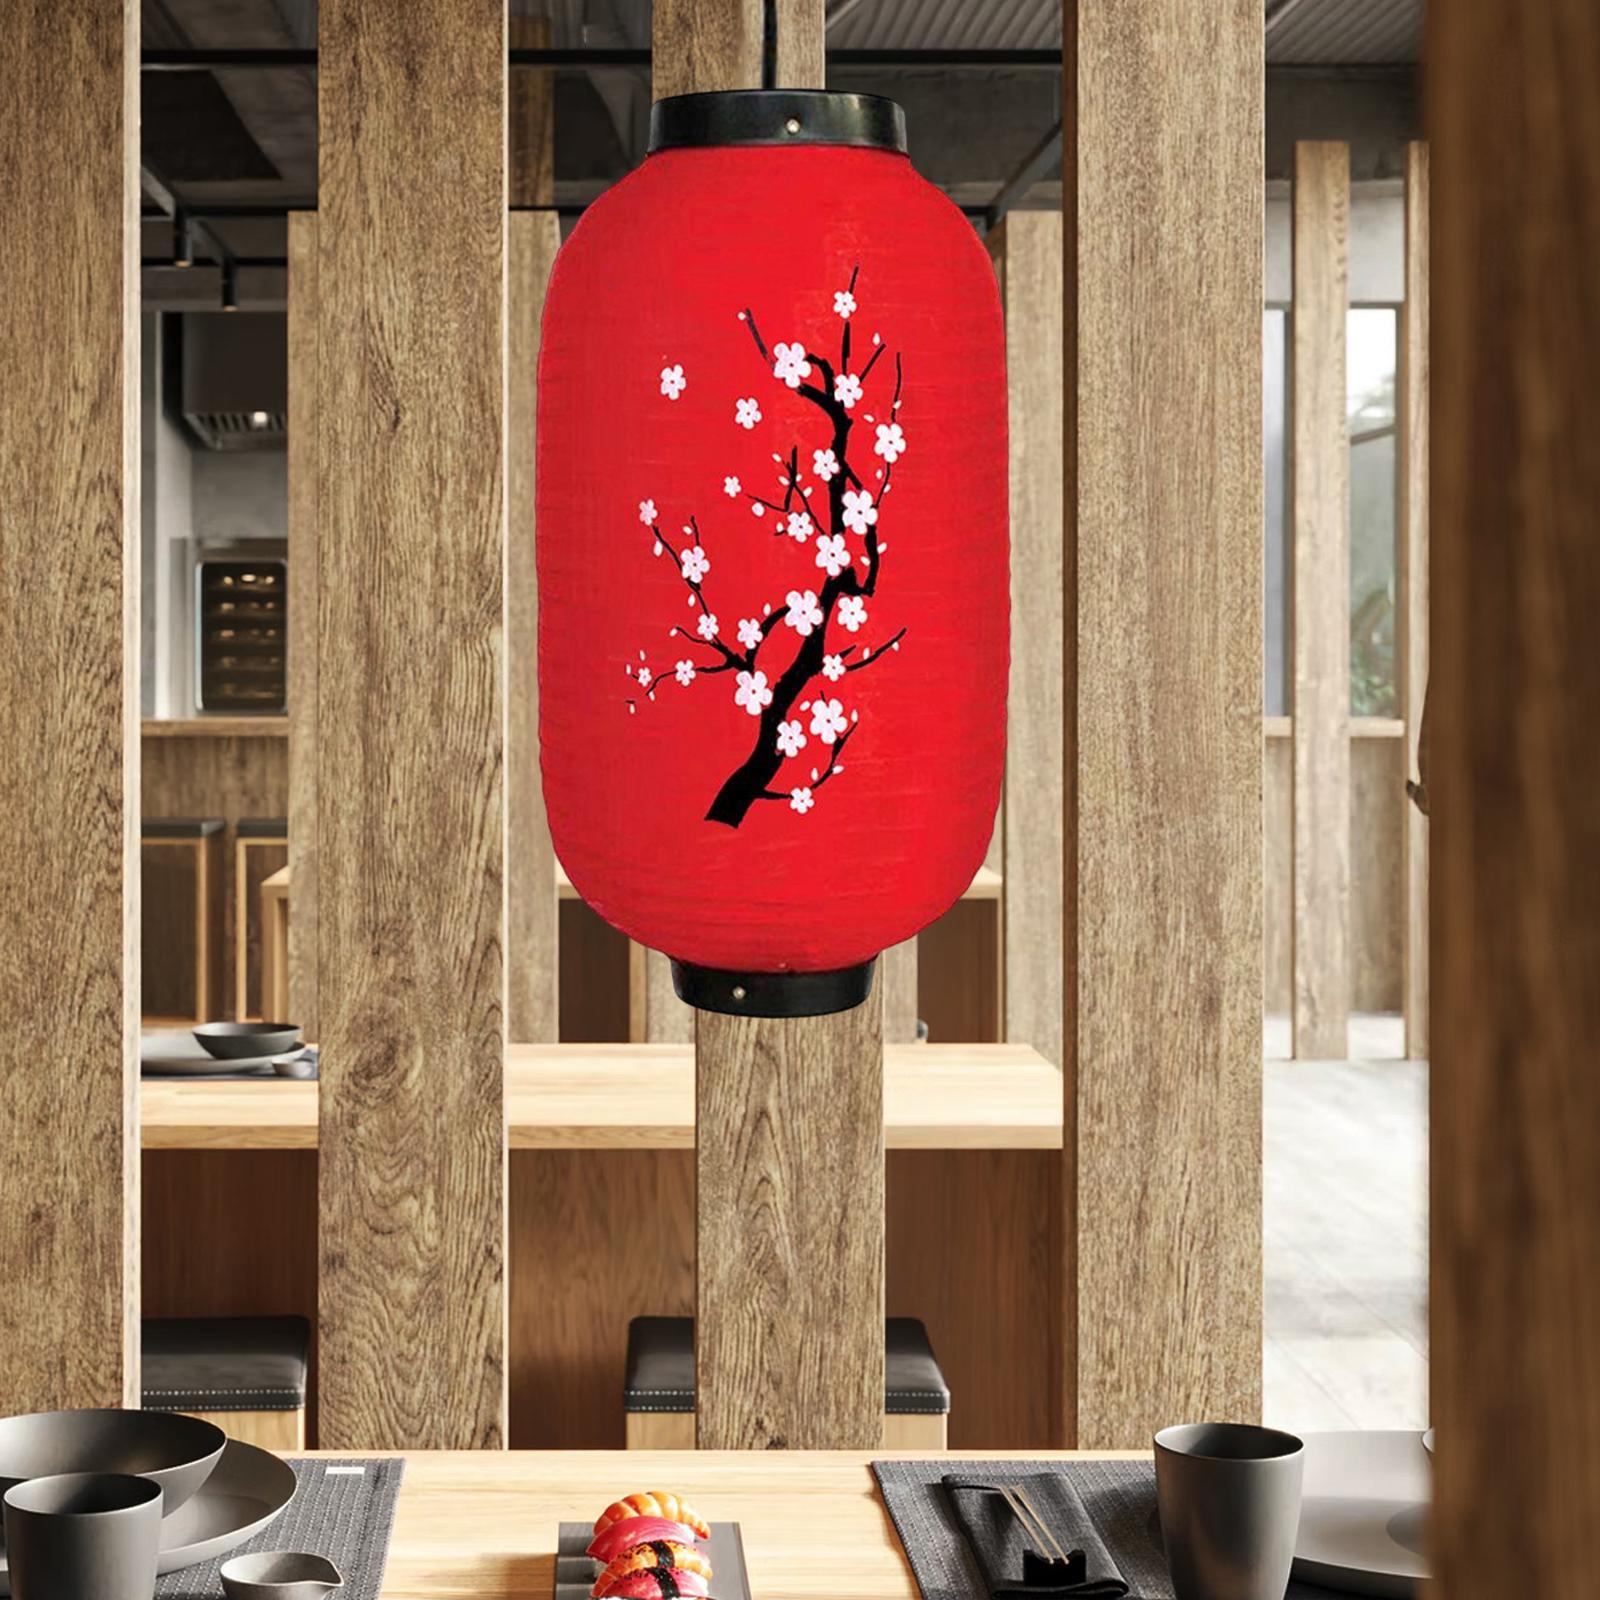 Japanese Style Lantern Hanging for Spring Festival Restaurant